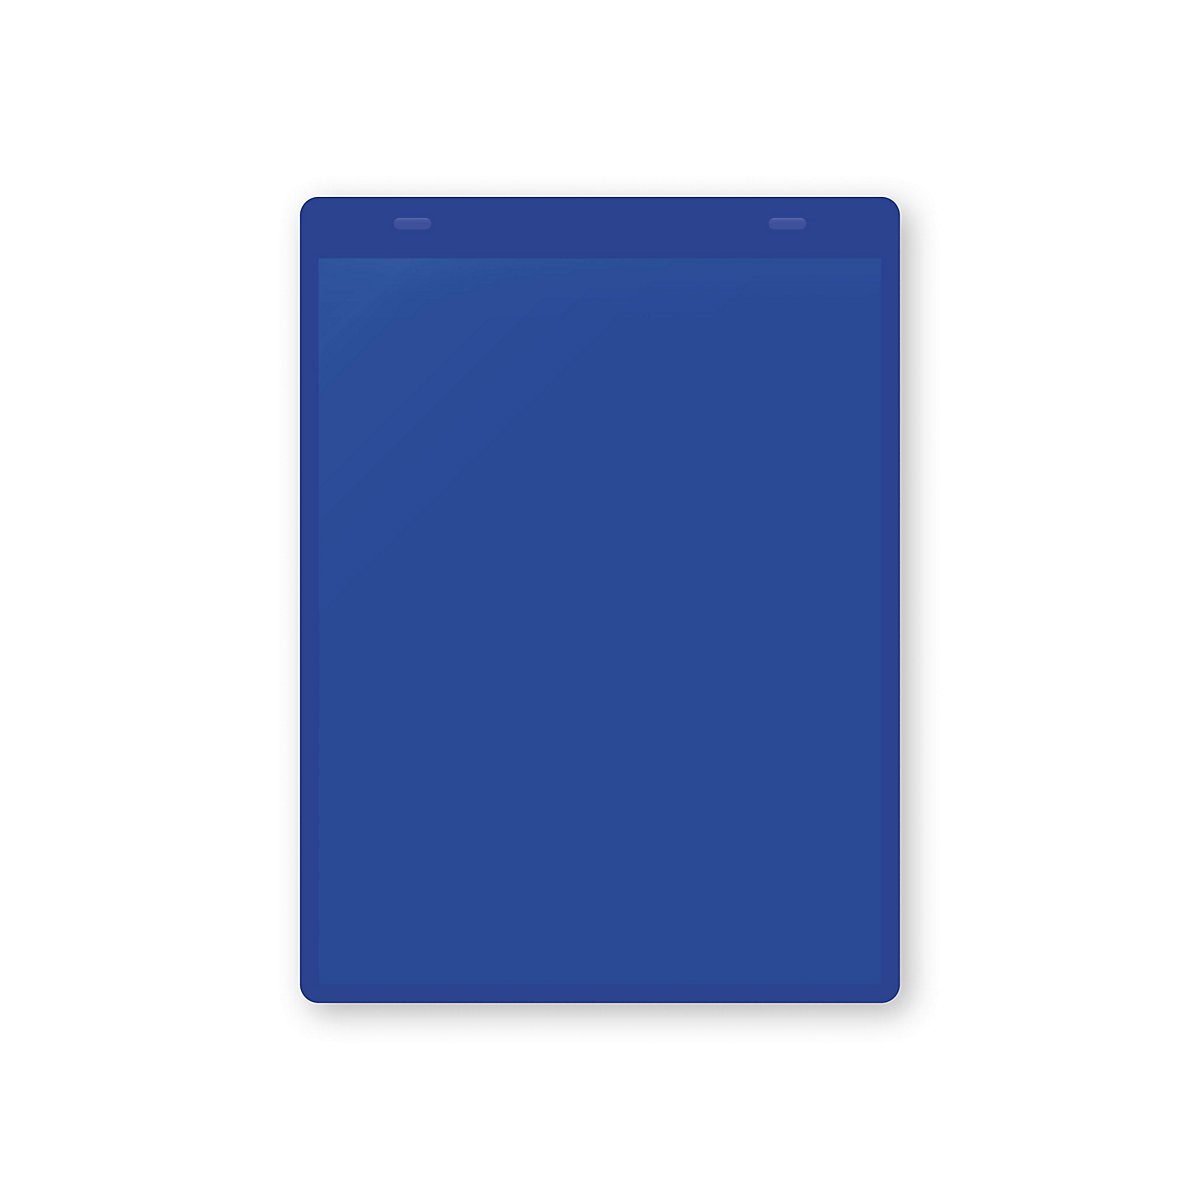 Dokumentumtartó tasakok akasztópánttal, DIN A5, álló, cs. e. 10 db, kék